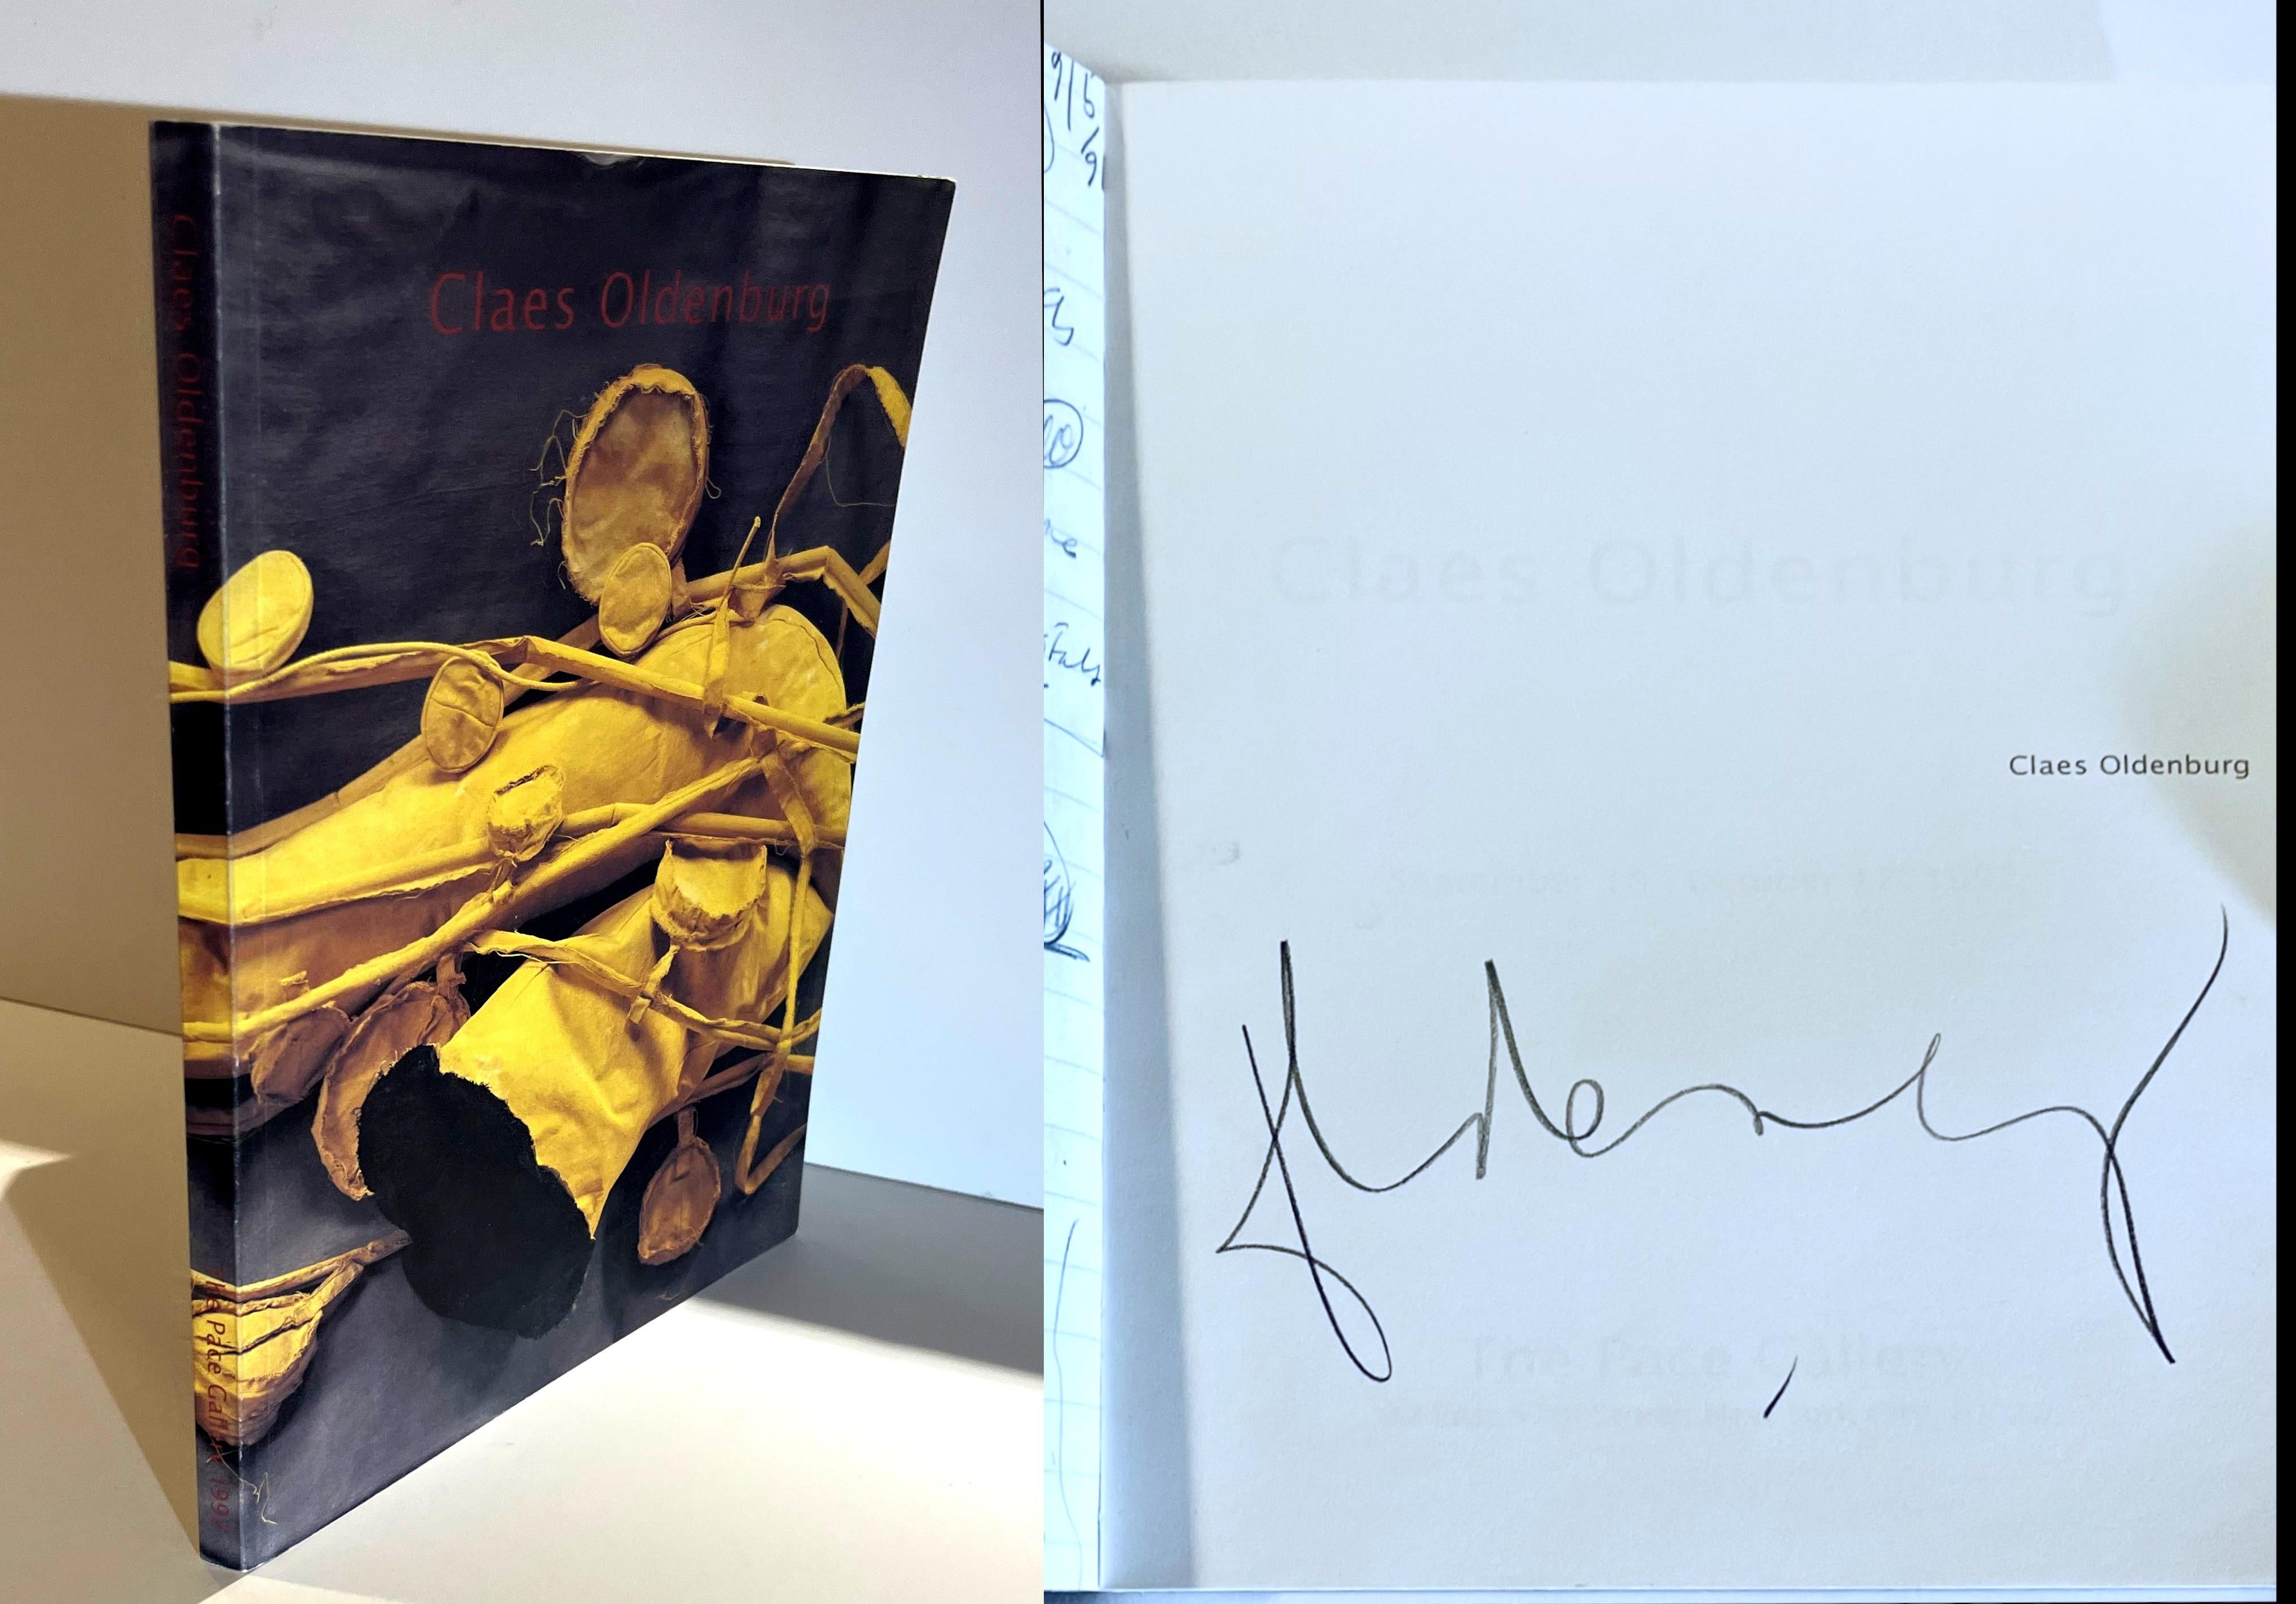 Claes Oldenburg, Claes Oldenburg (firmato a mano da Claes Oldenburg), 1992